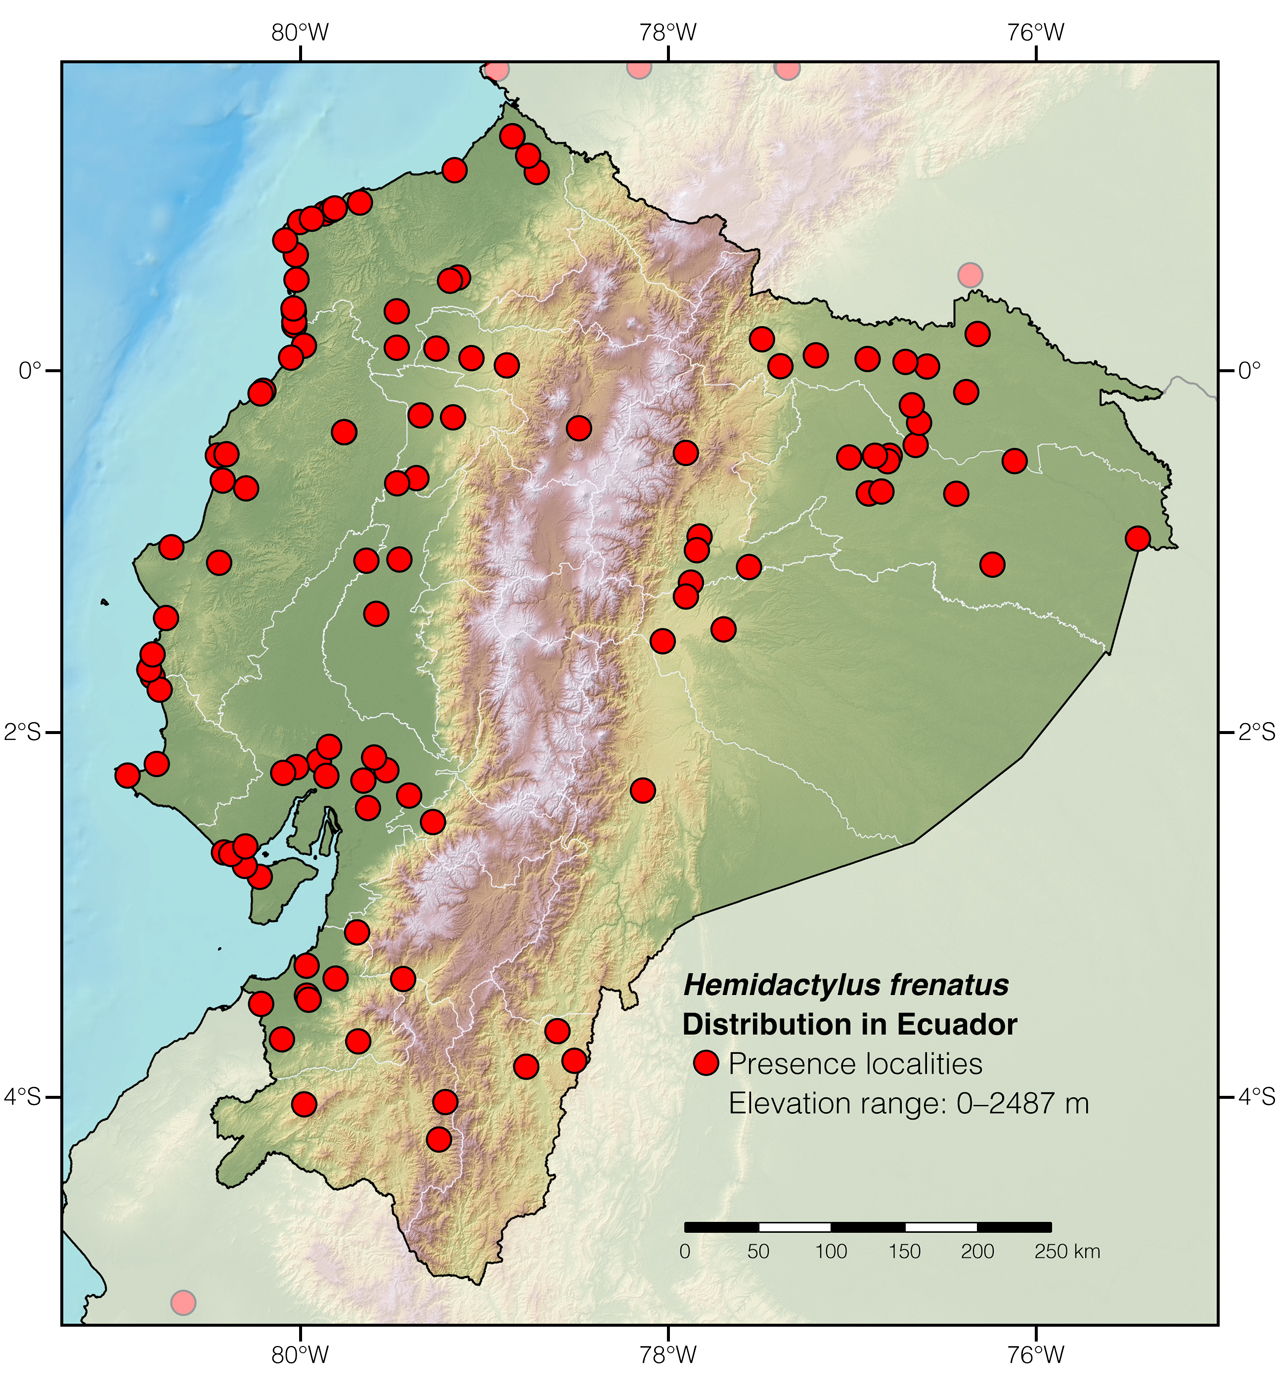 Distribution of Hemidactylus frenatus in Ecuador